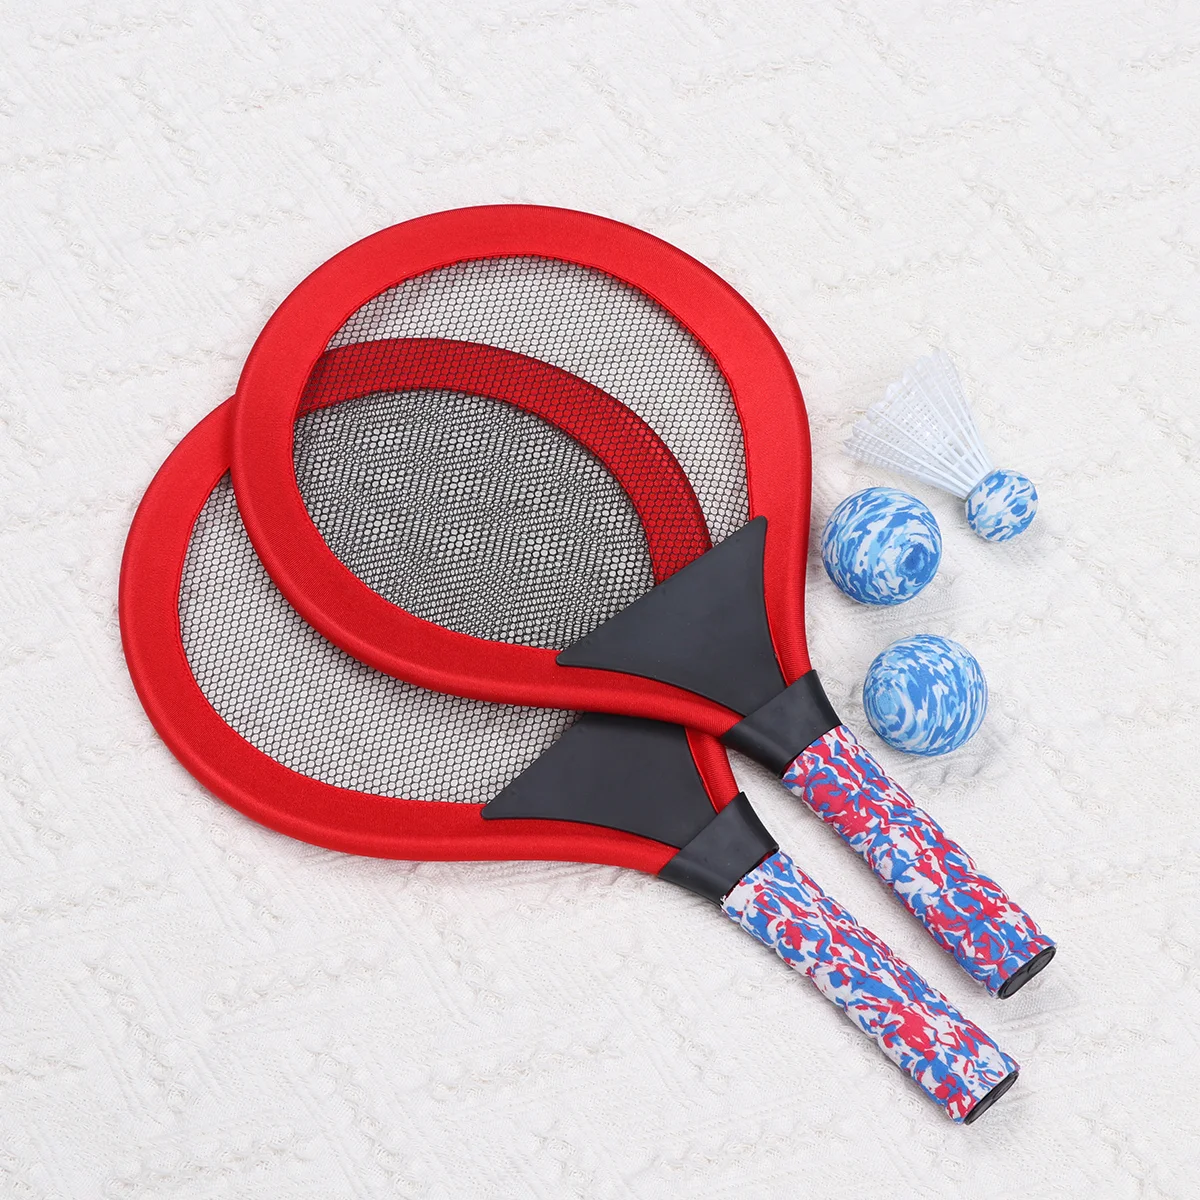 

Комплект детских теннисных ракеток, теннисные ракетки для малышей или детей (Возраст 3- 5 лет), уличные виды спорта, упаковка